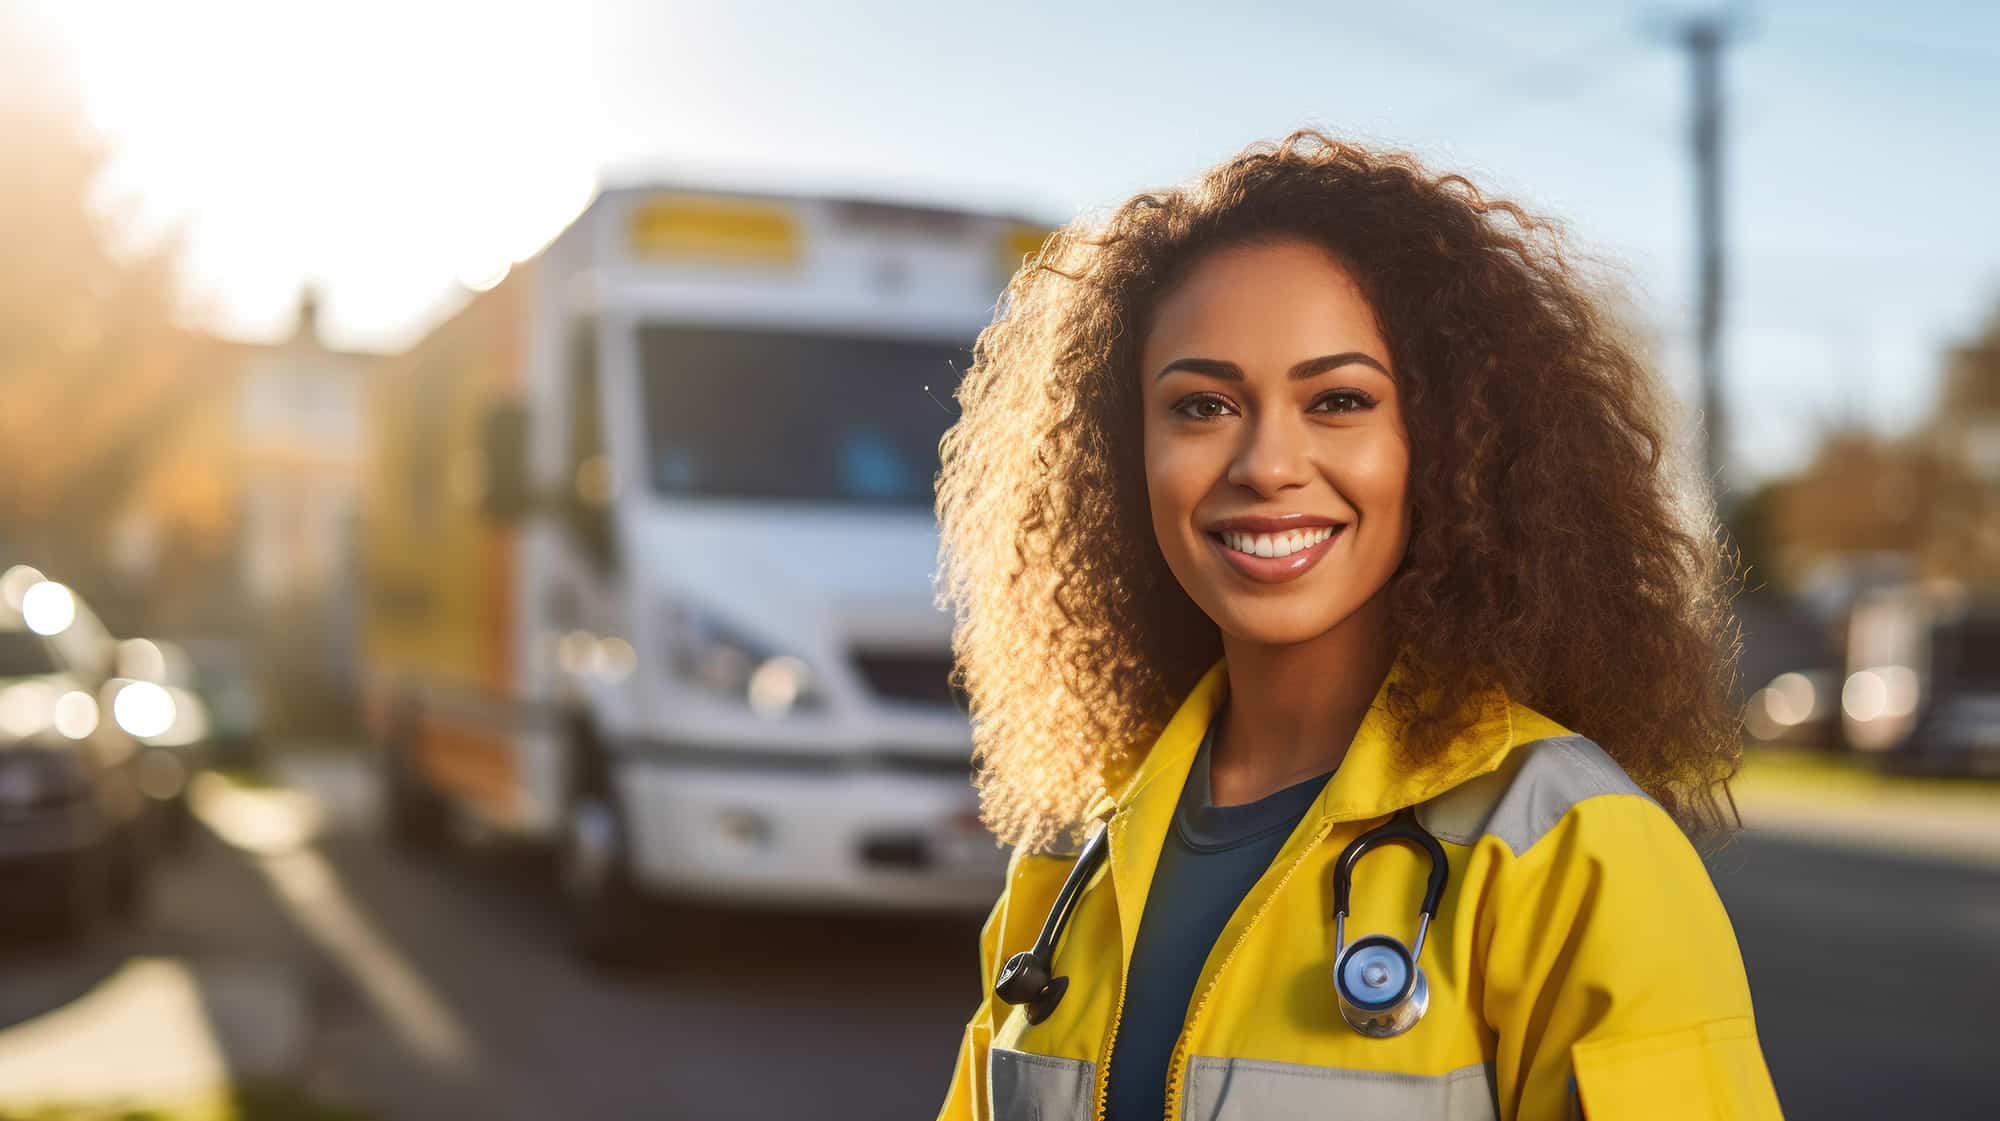 EMT Careers For Ambulances